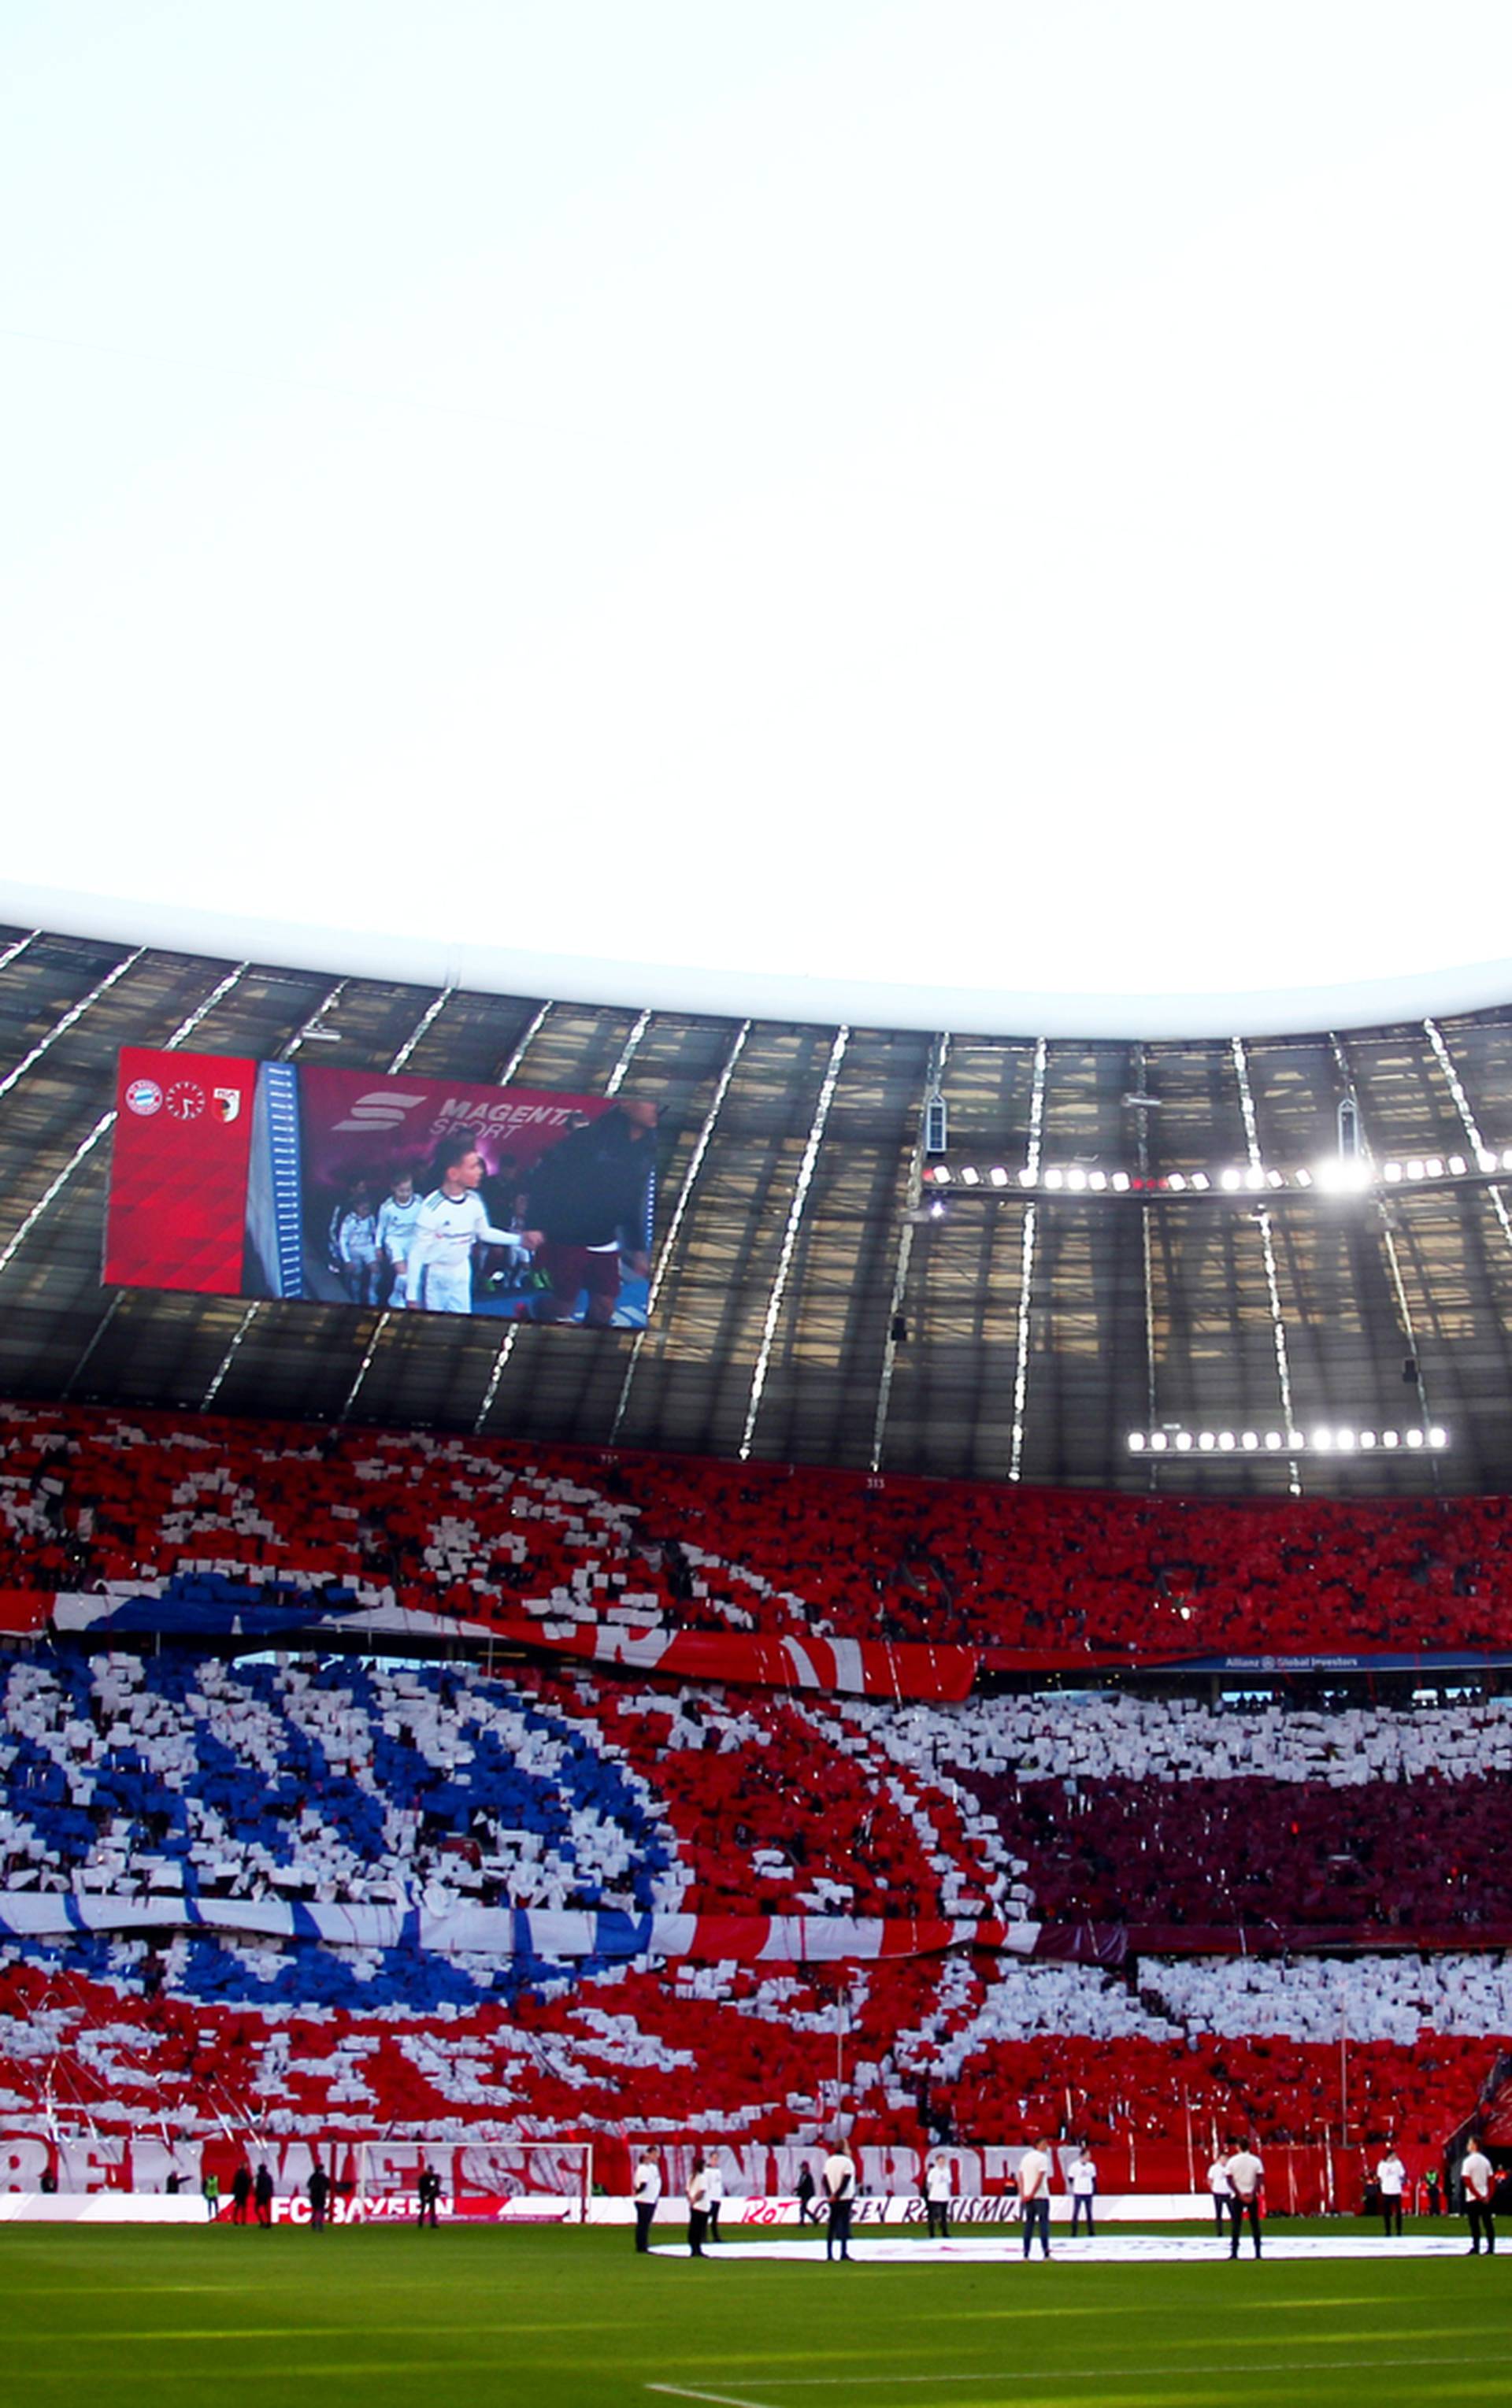 Bayernovi cyber-treninzi: Svi pred ekran i bez zabušavanja!